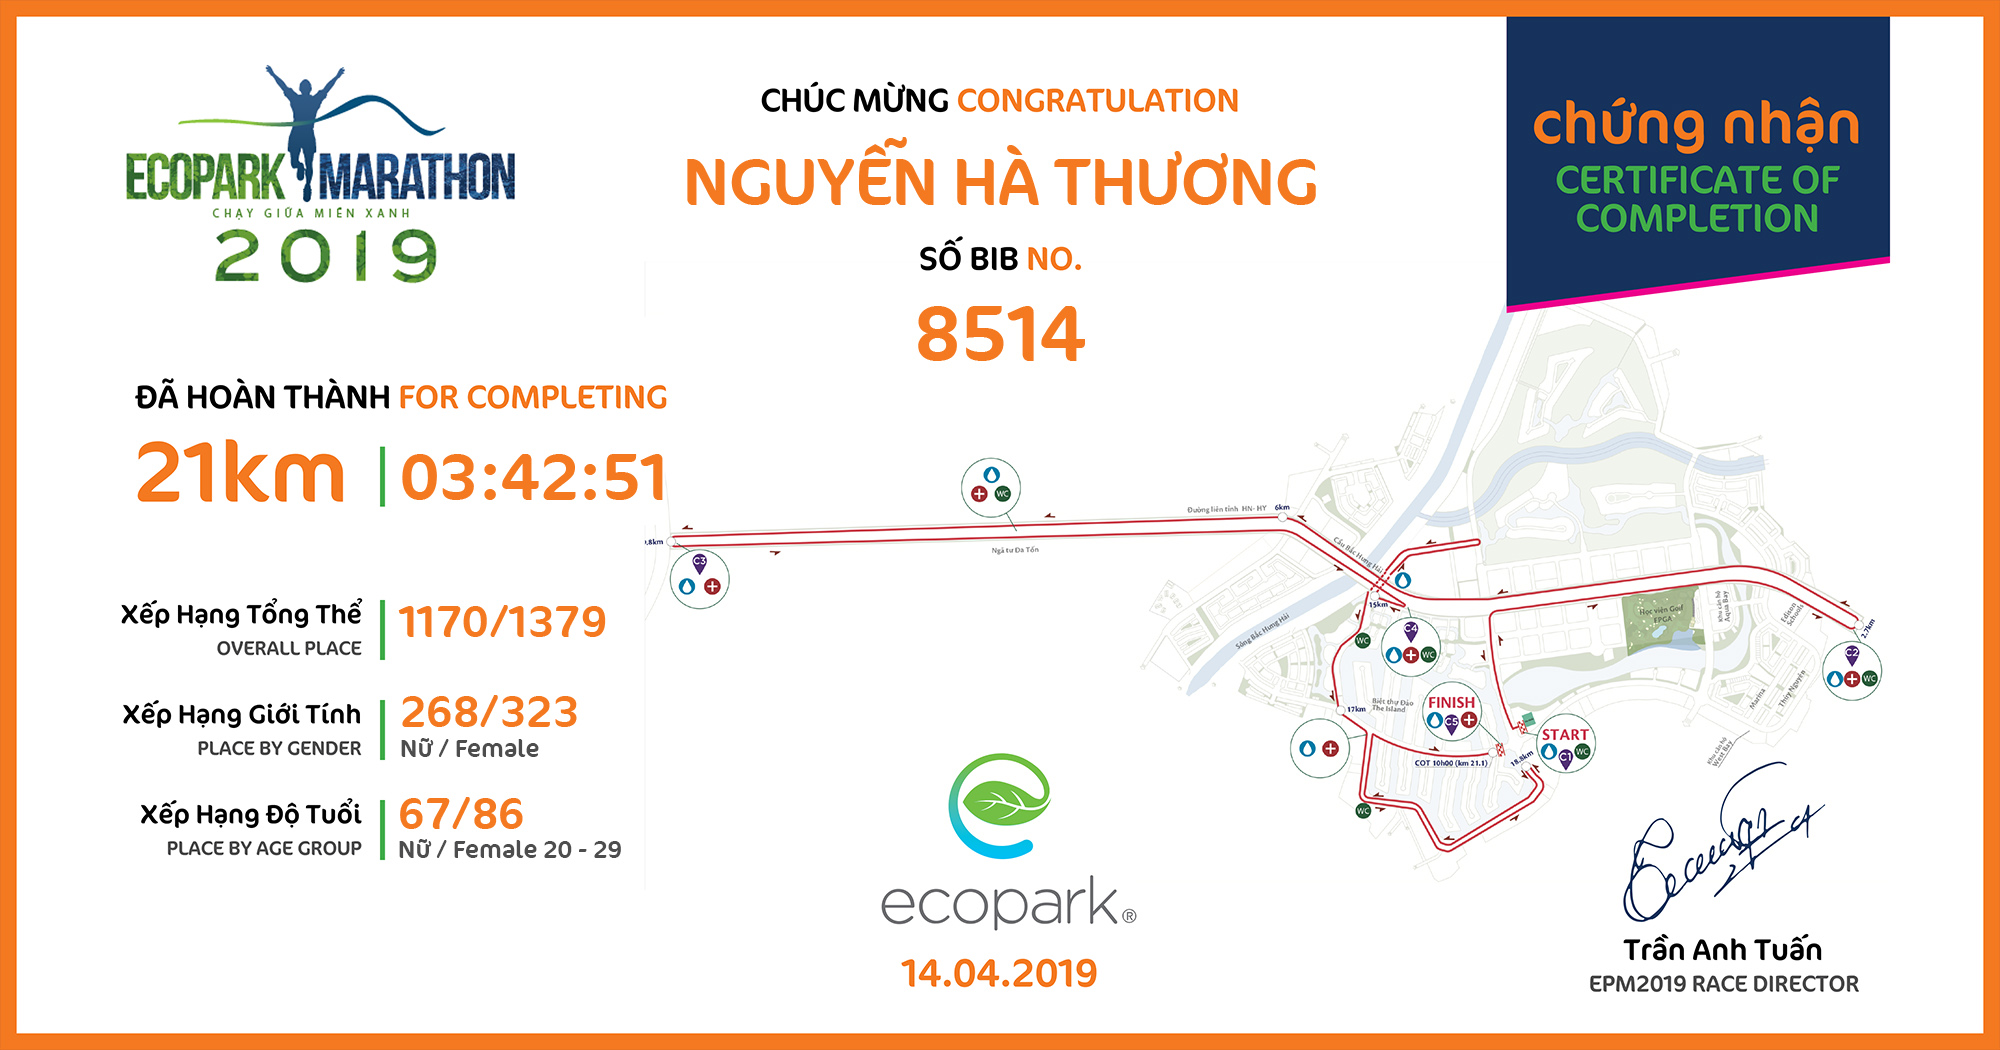 8514 - Nguyễn Hà Thương